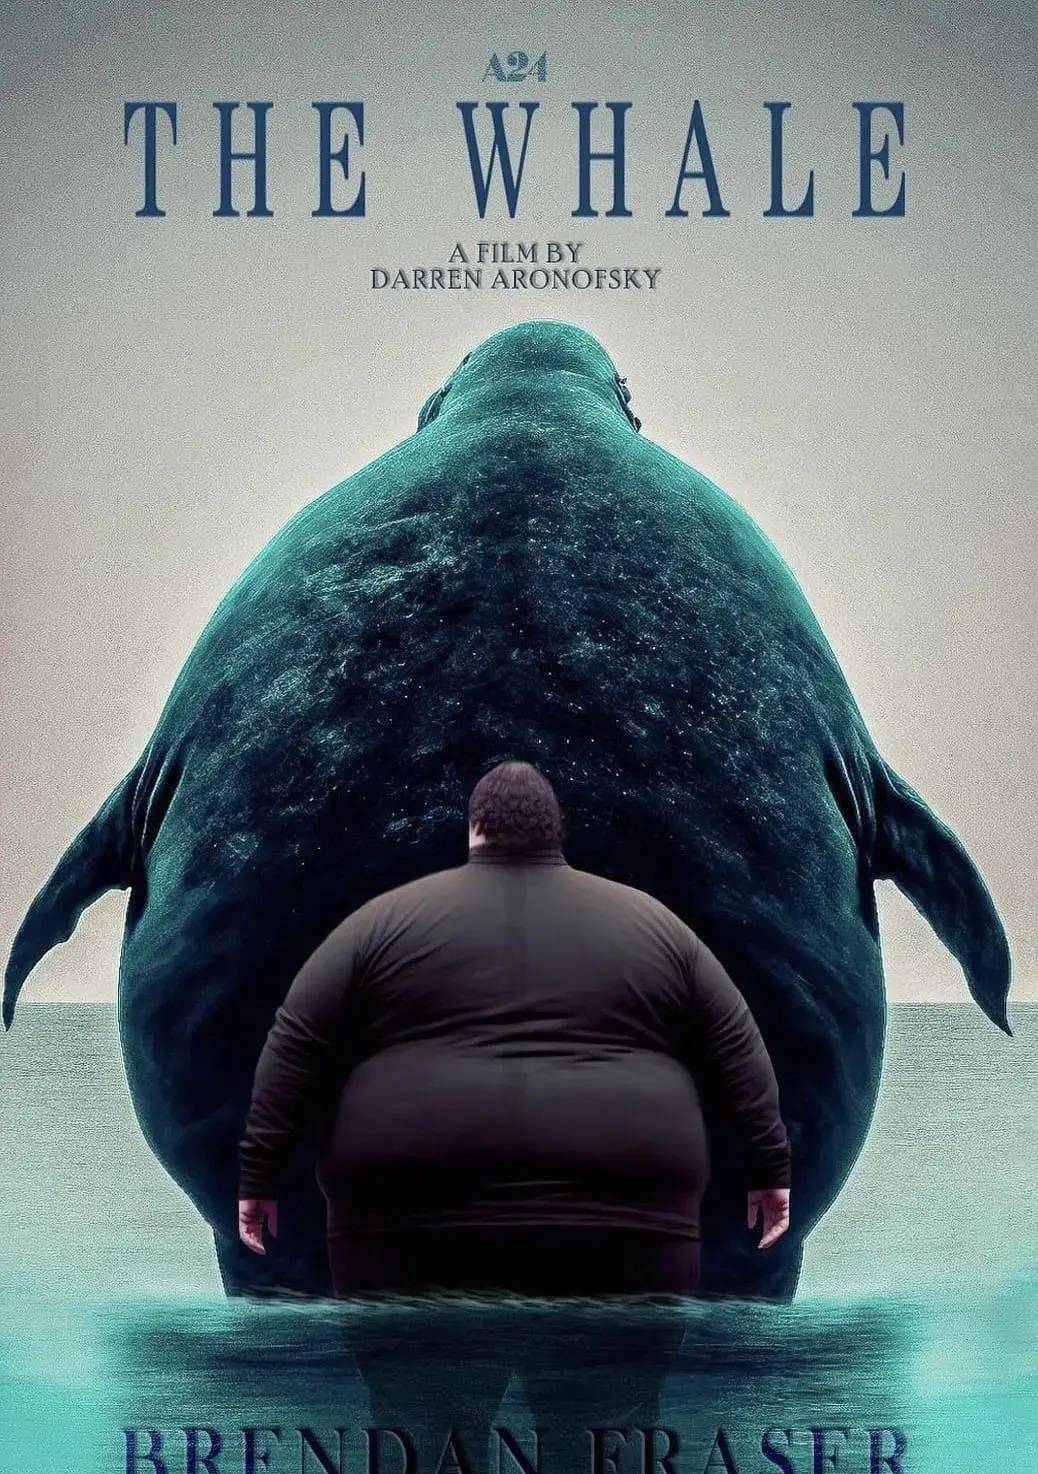 鲸鱼电影大全美国的图片